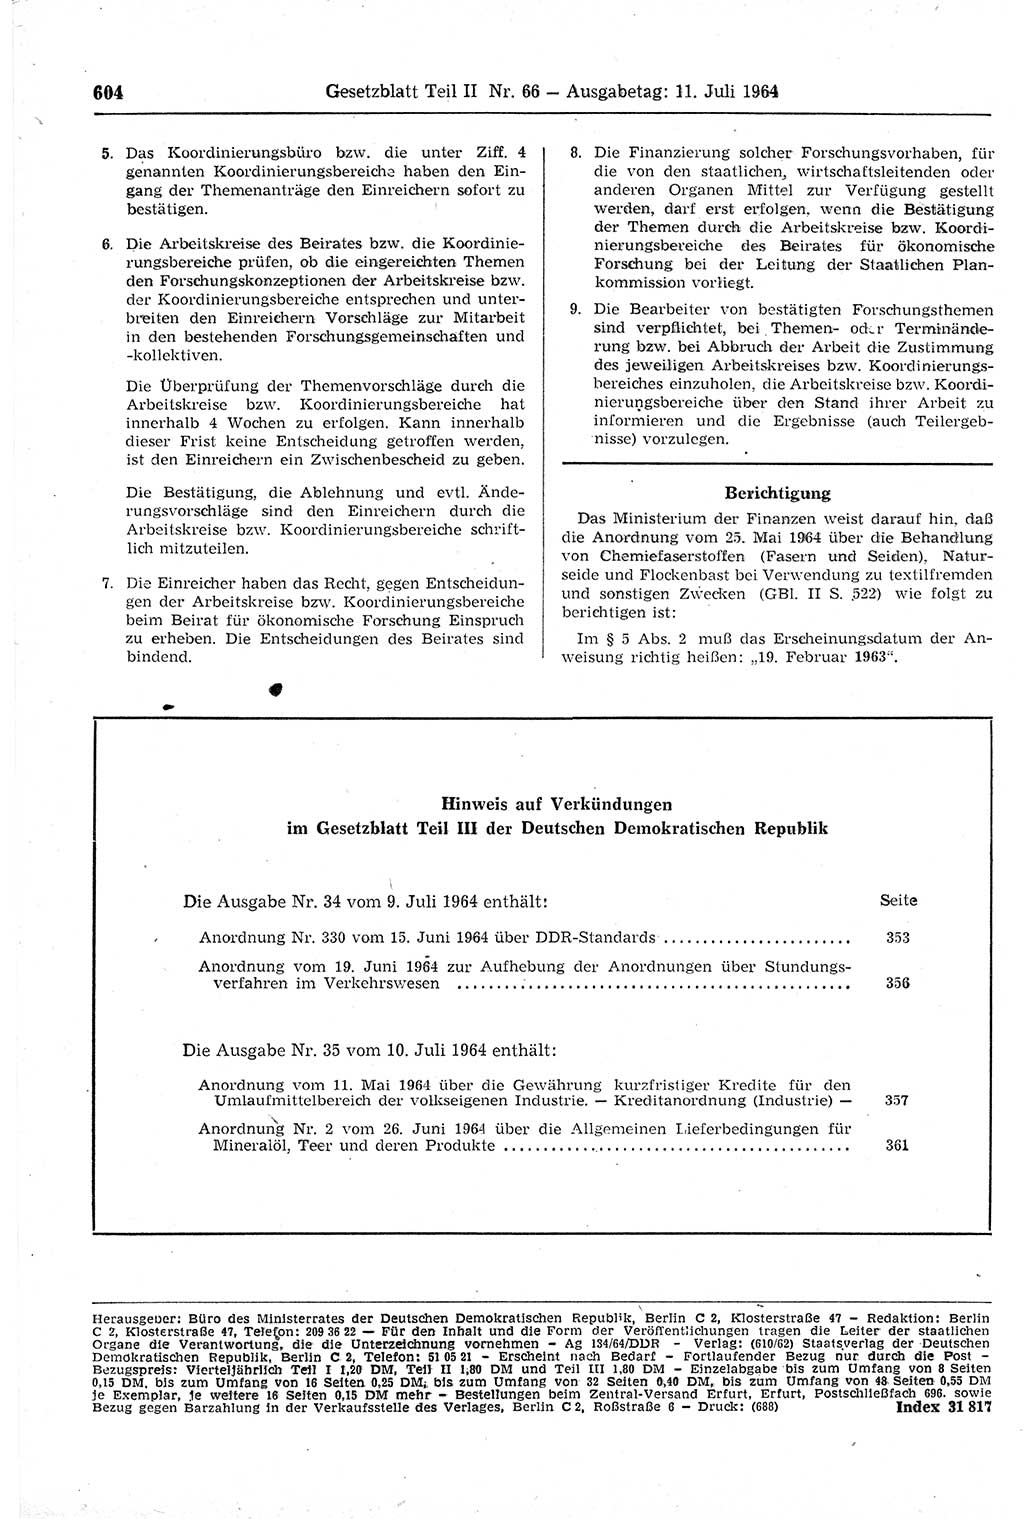 Gesetzblatt (GBl.) der Deutschen Demokratischen Republik (DDR) Teil ⅠⅠ 1964, Seite 604 (GBl. DDR ⅠⅠ 1964, S. 604)